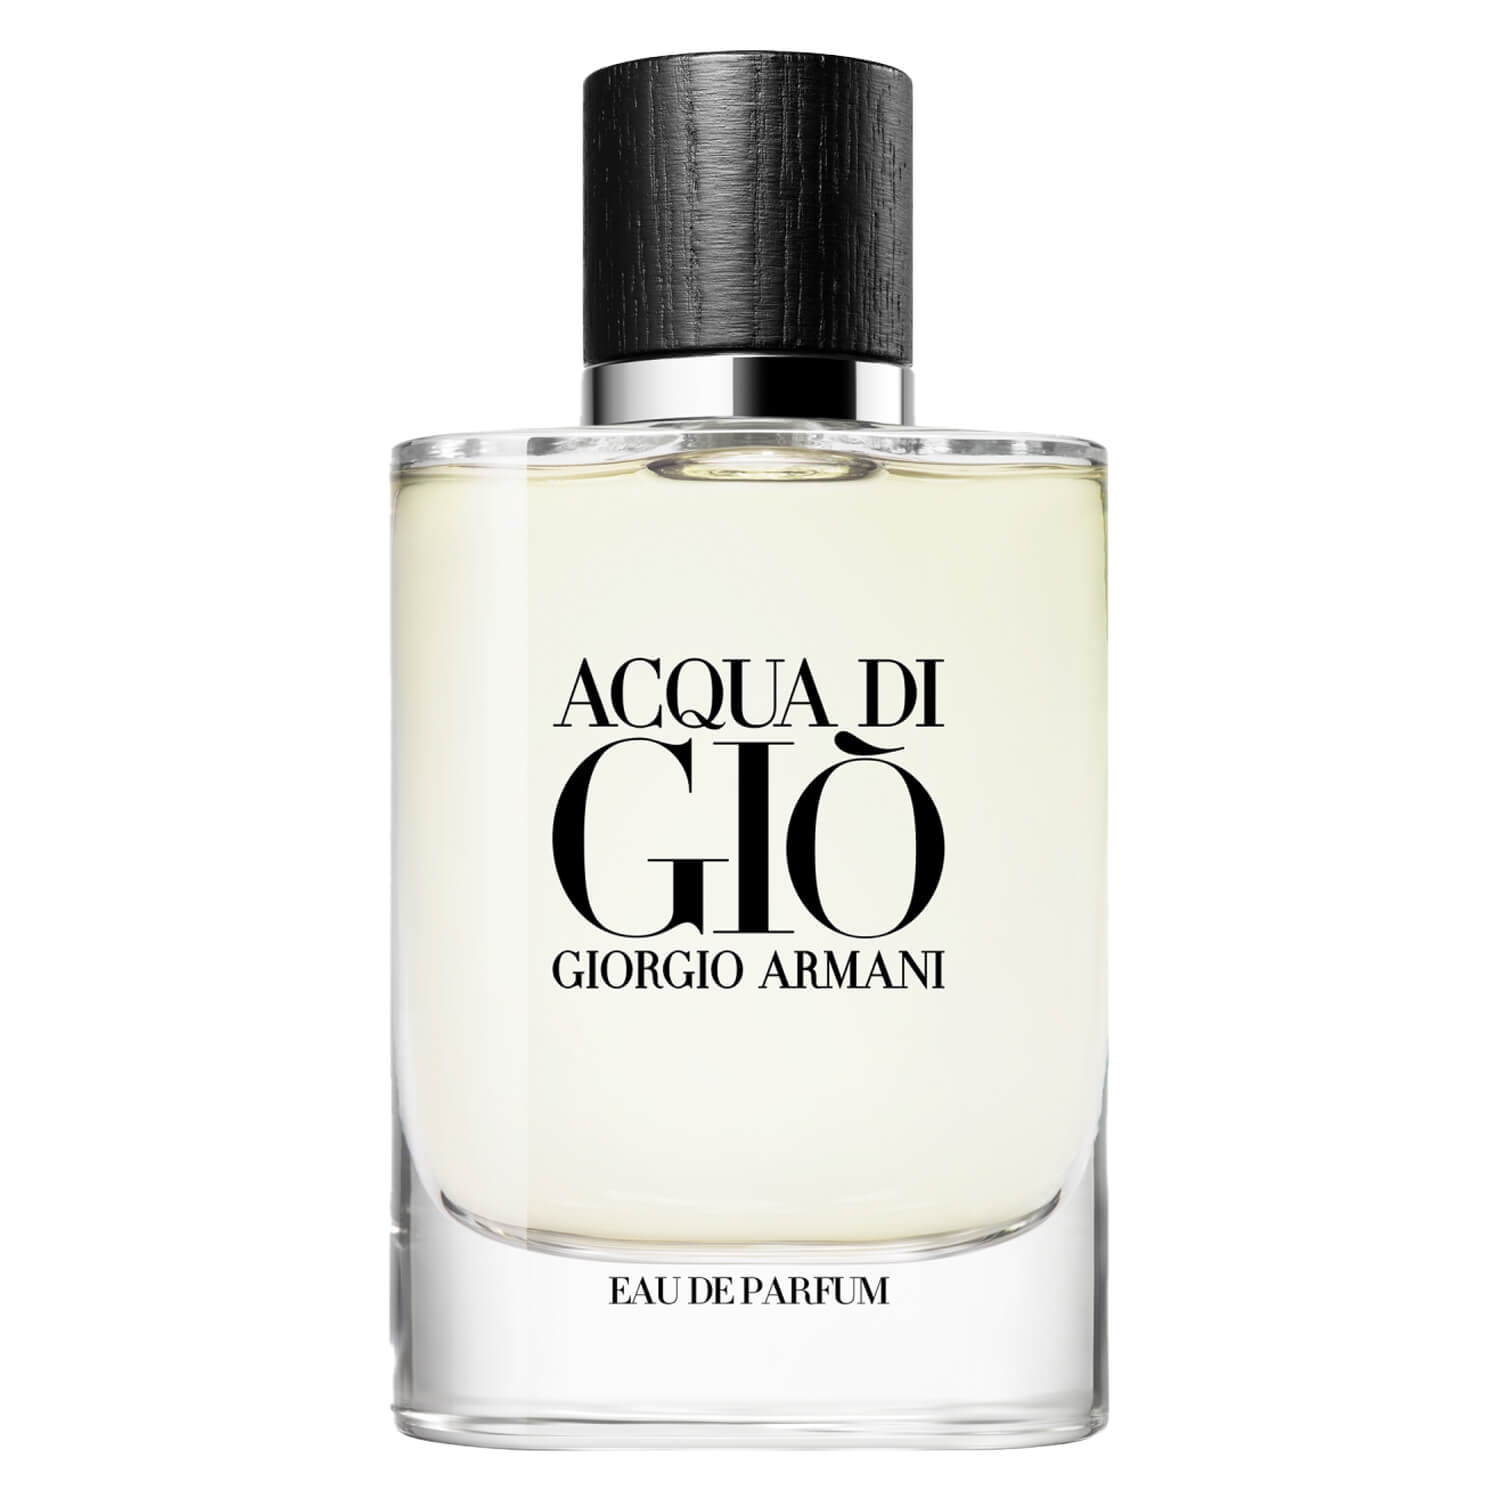 Product image from Acqua di Giò - Eau de Parfum